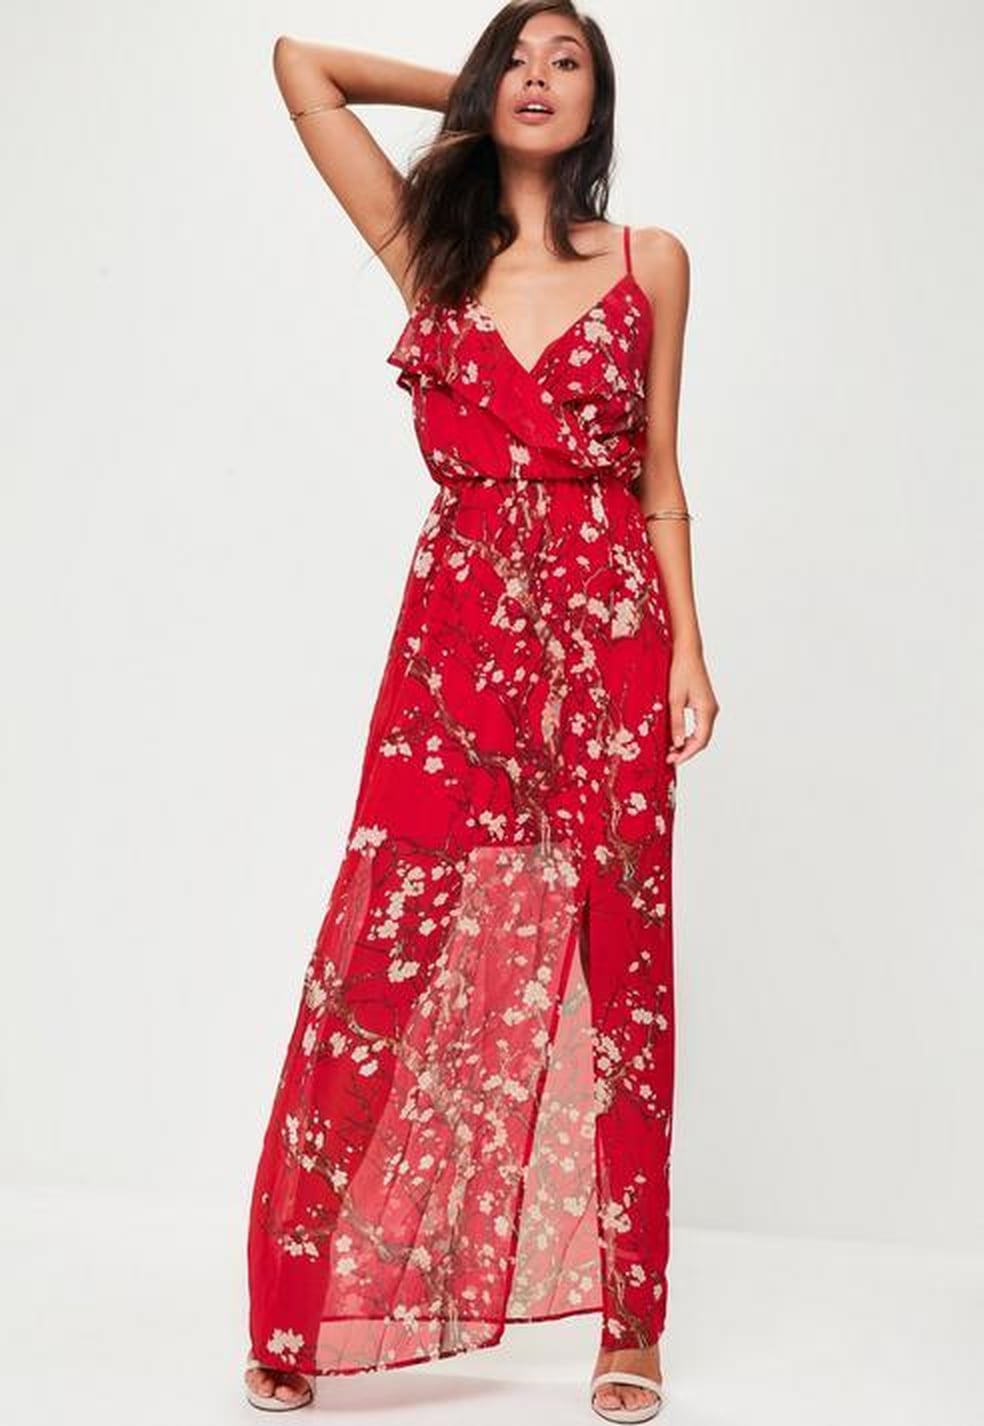 Meghan Markle Red Floral Erdem Dress | POPSUGAR Fashion